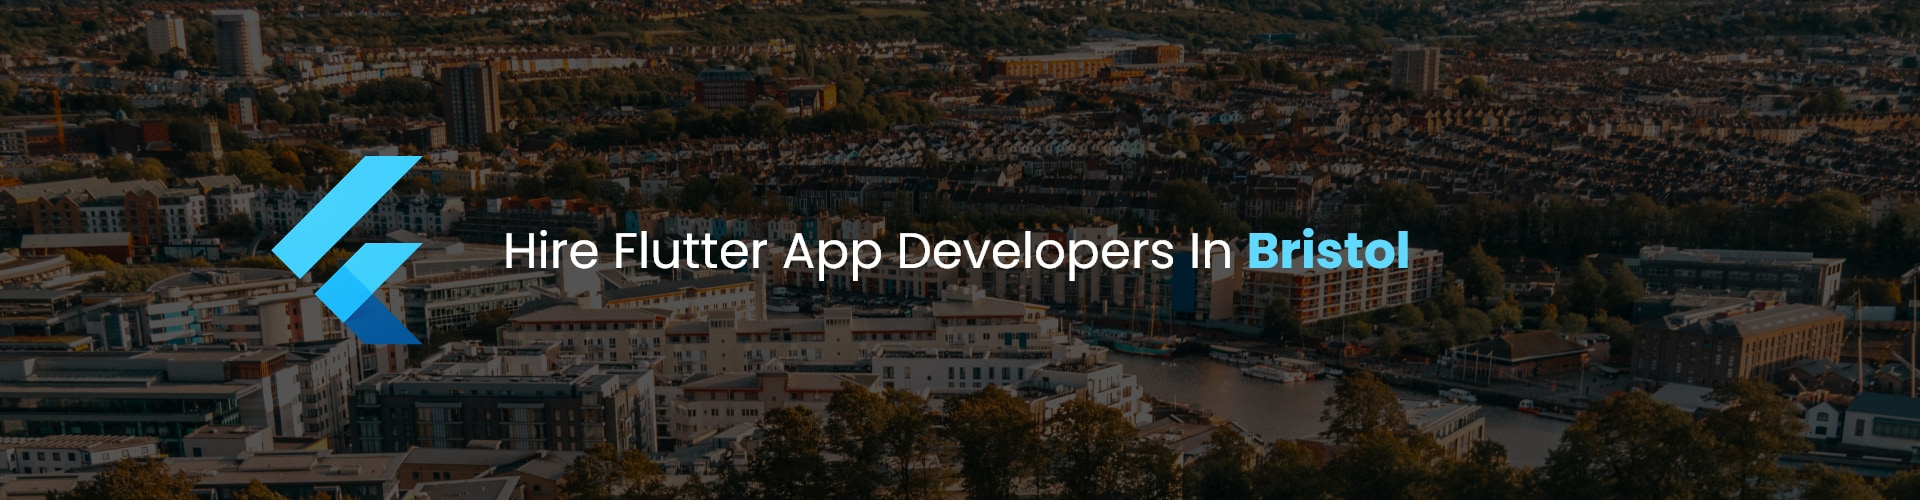 hire flutter app developers in bristol